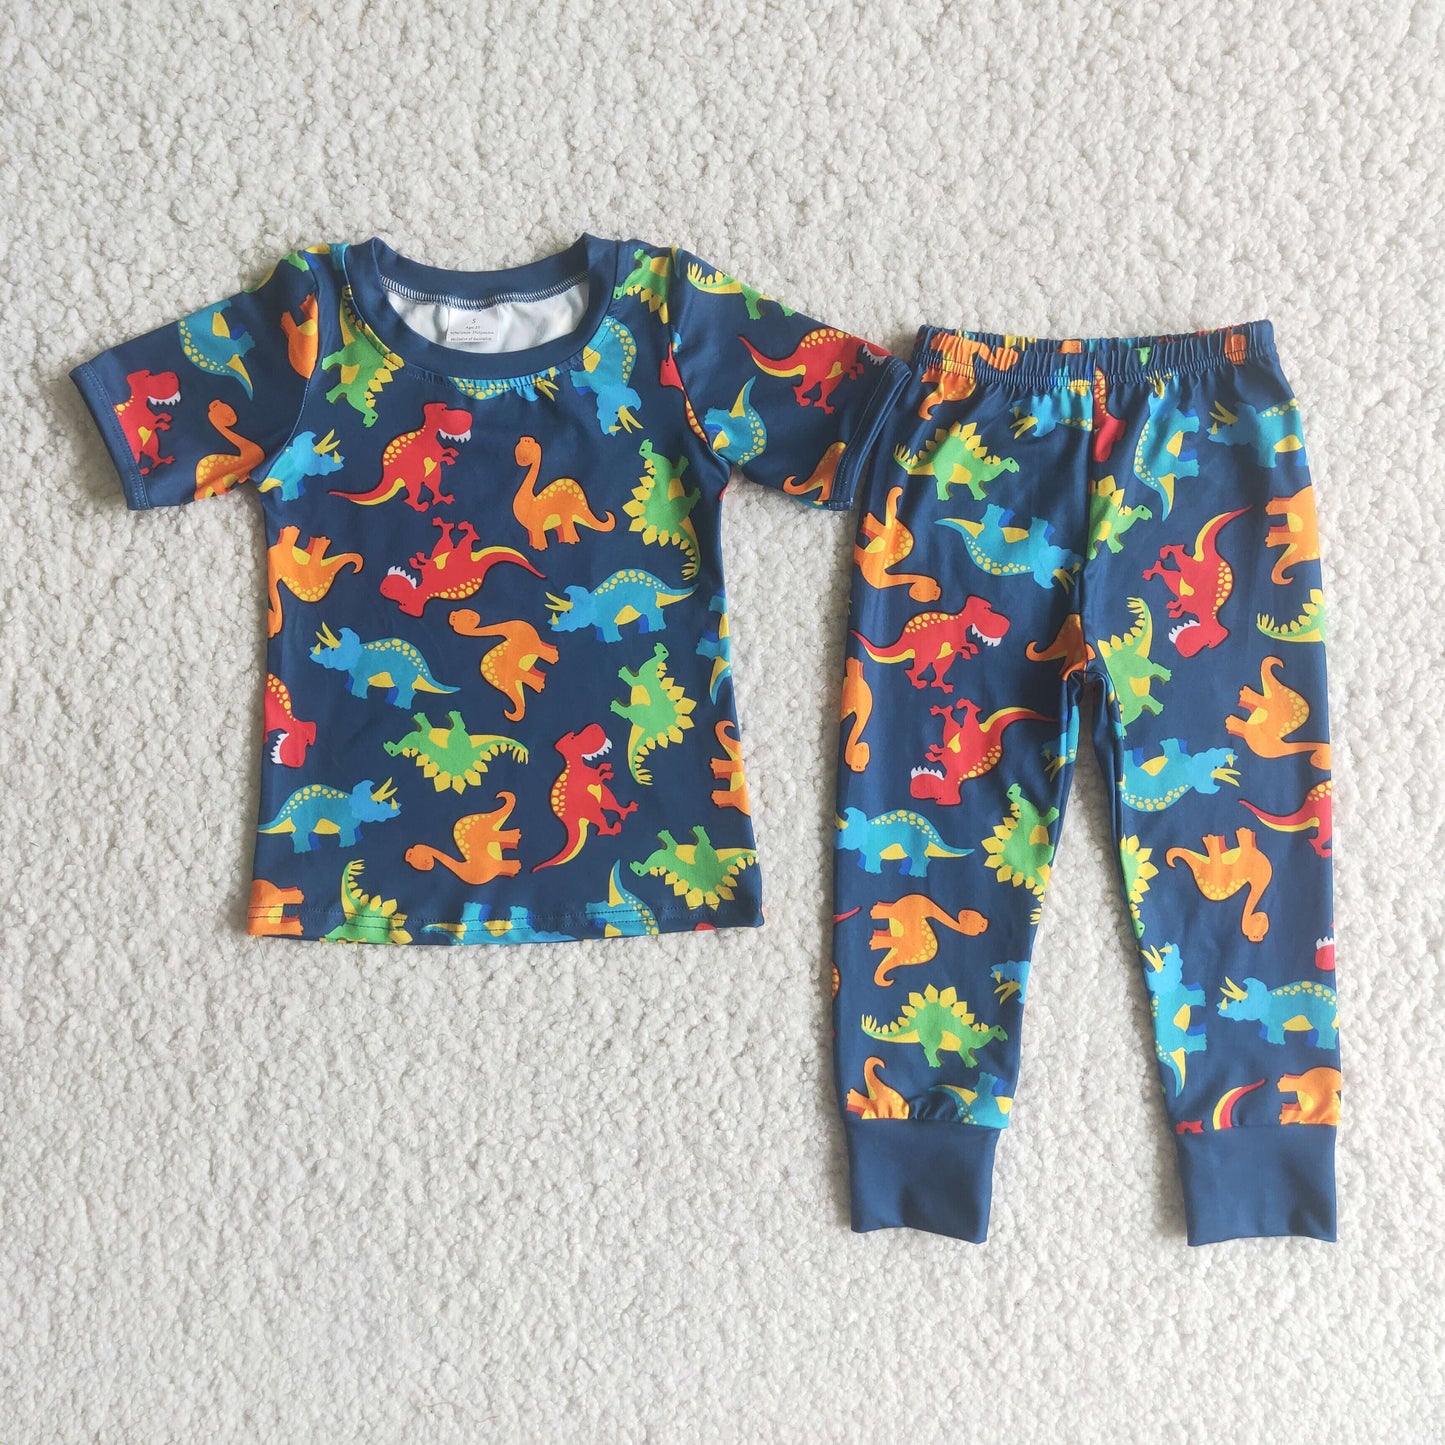 Dinosaur print shorts sleeve boy pajamas